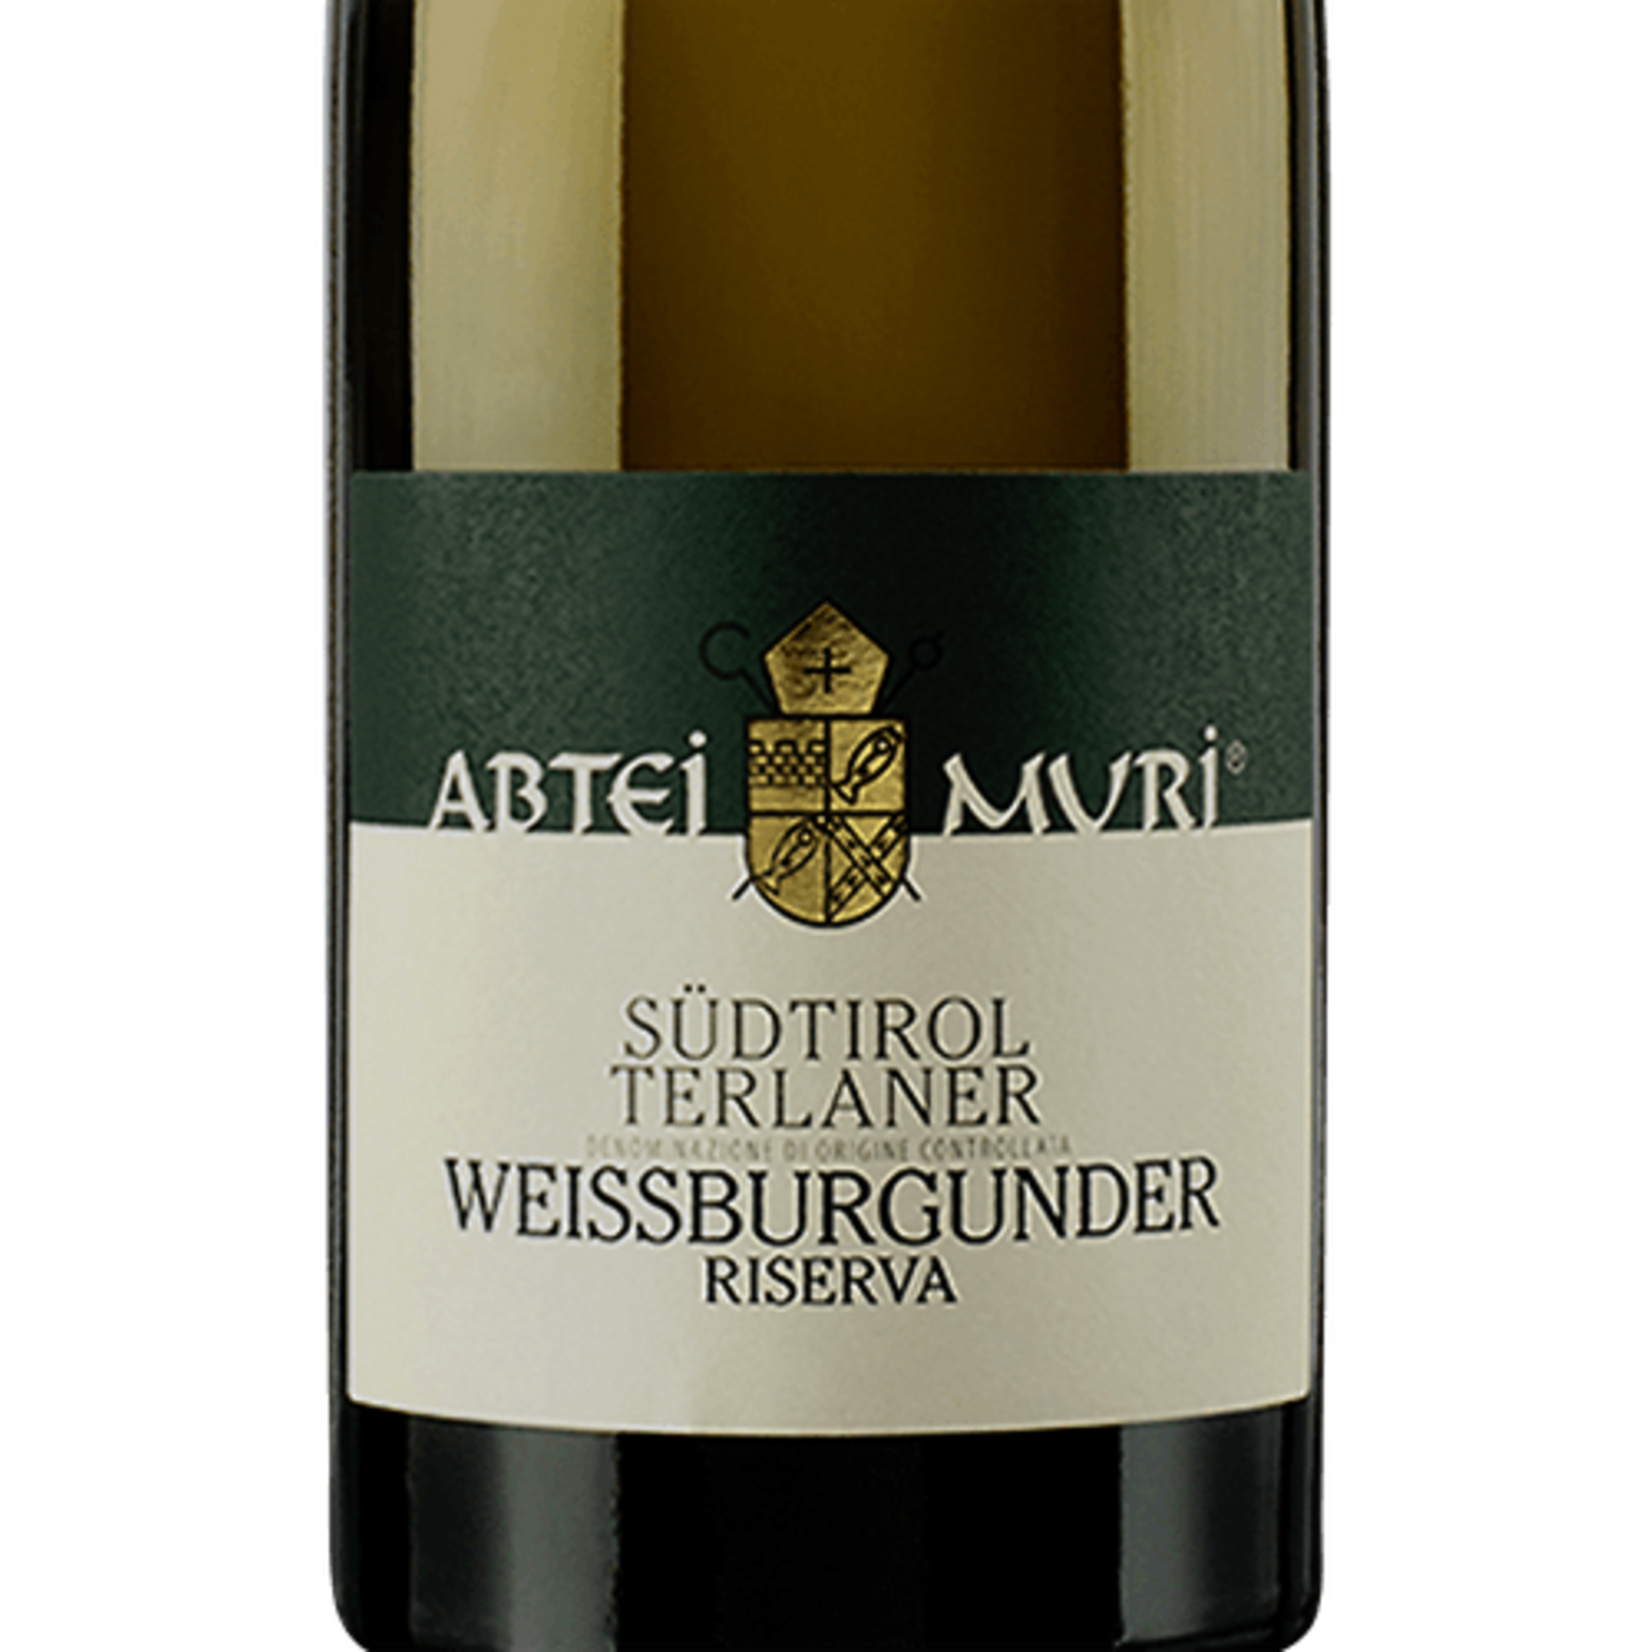 Muri-Gries Abtei Muri Sudtirol Terlaner Weissburgunder Riserva Pinot Bianco 2019 Alto Adige  Italy